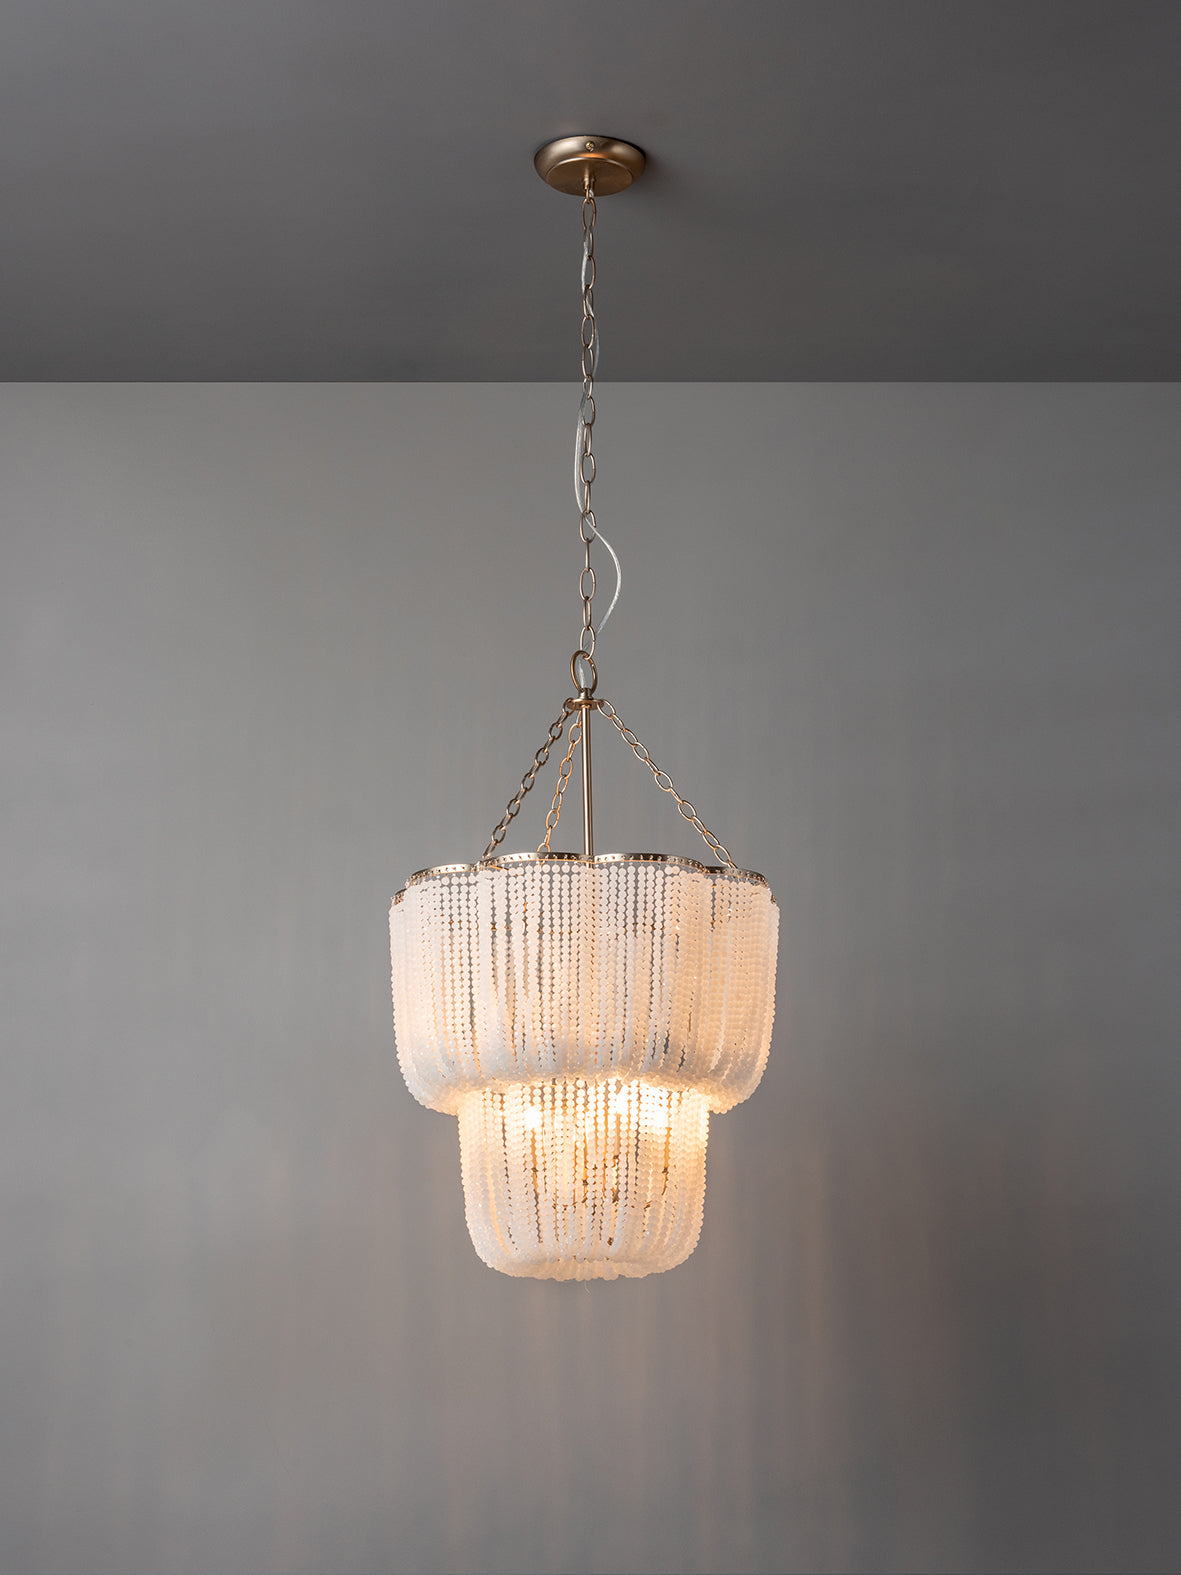 Pello - 4 light white scalloped chandelier | Chandelier | Lights & Lamps | UK | Modern Affordable Designer Lighting